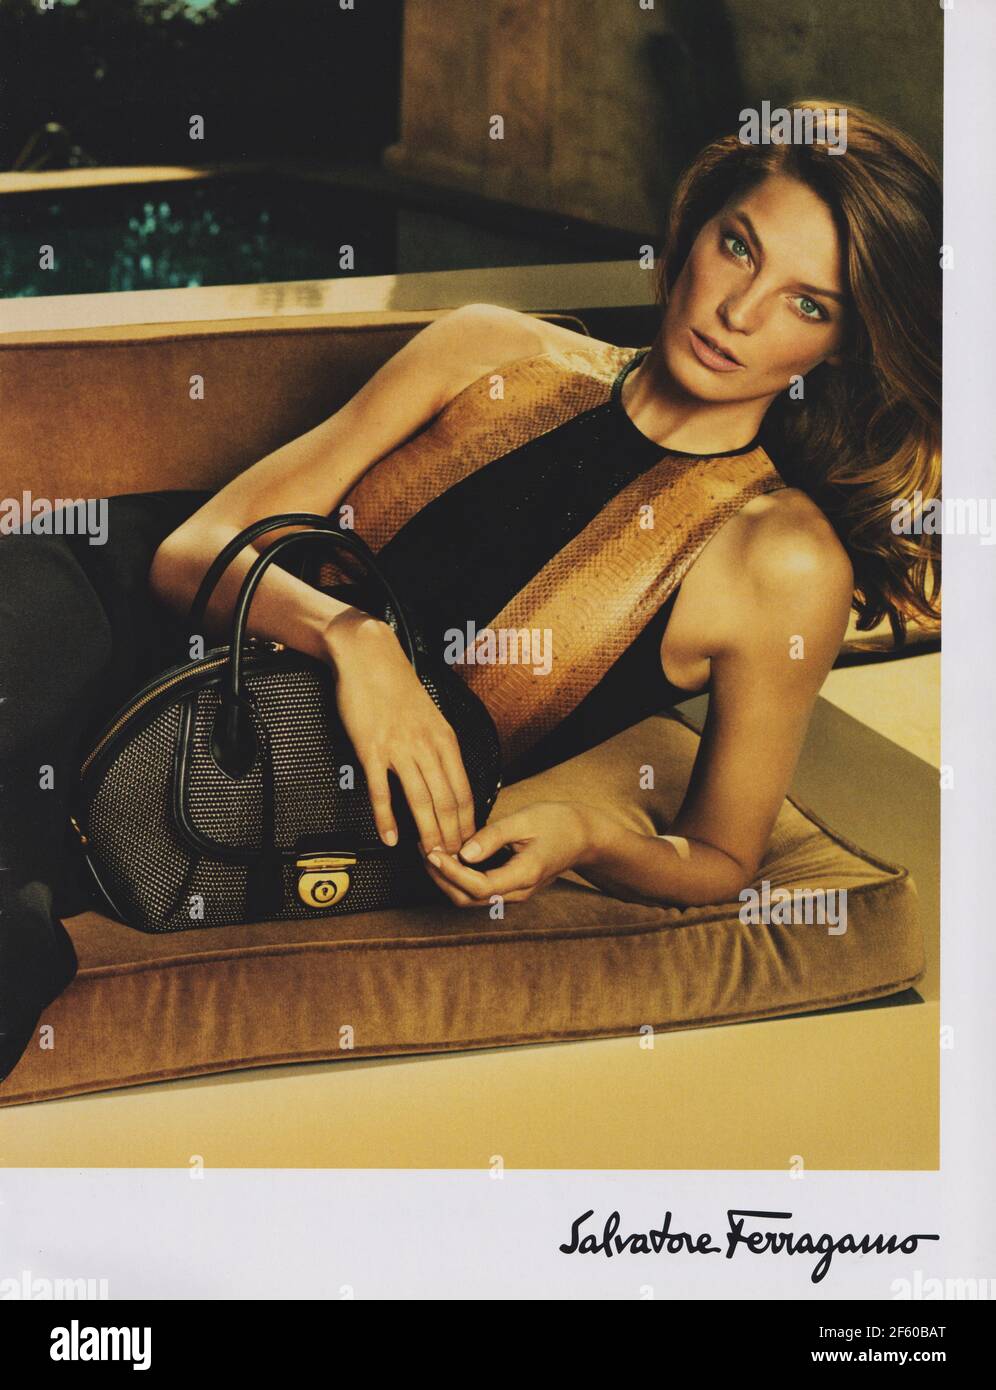 Affiche publicitaire Salvatore Ferragamo maison de mode avec Daria Werbowy dans le magazine papier de 2015, publicité, publicité créative 2010 Banque D'Images